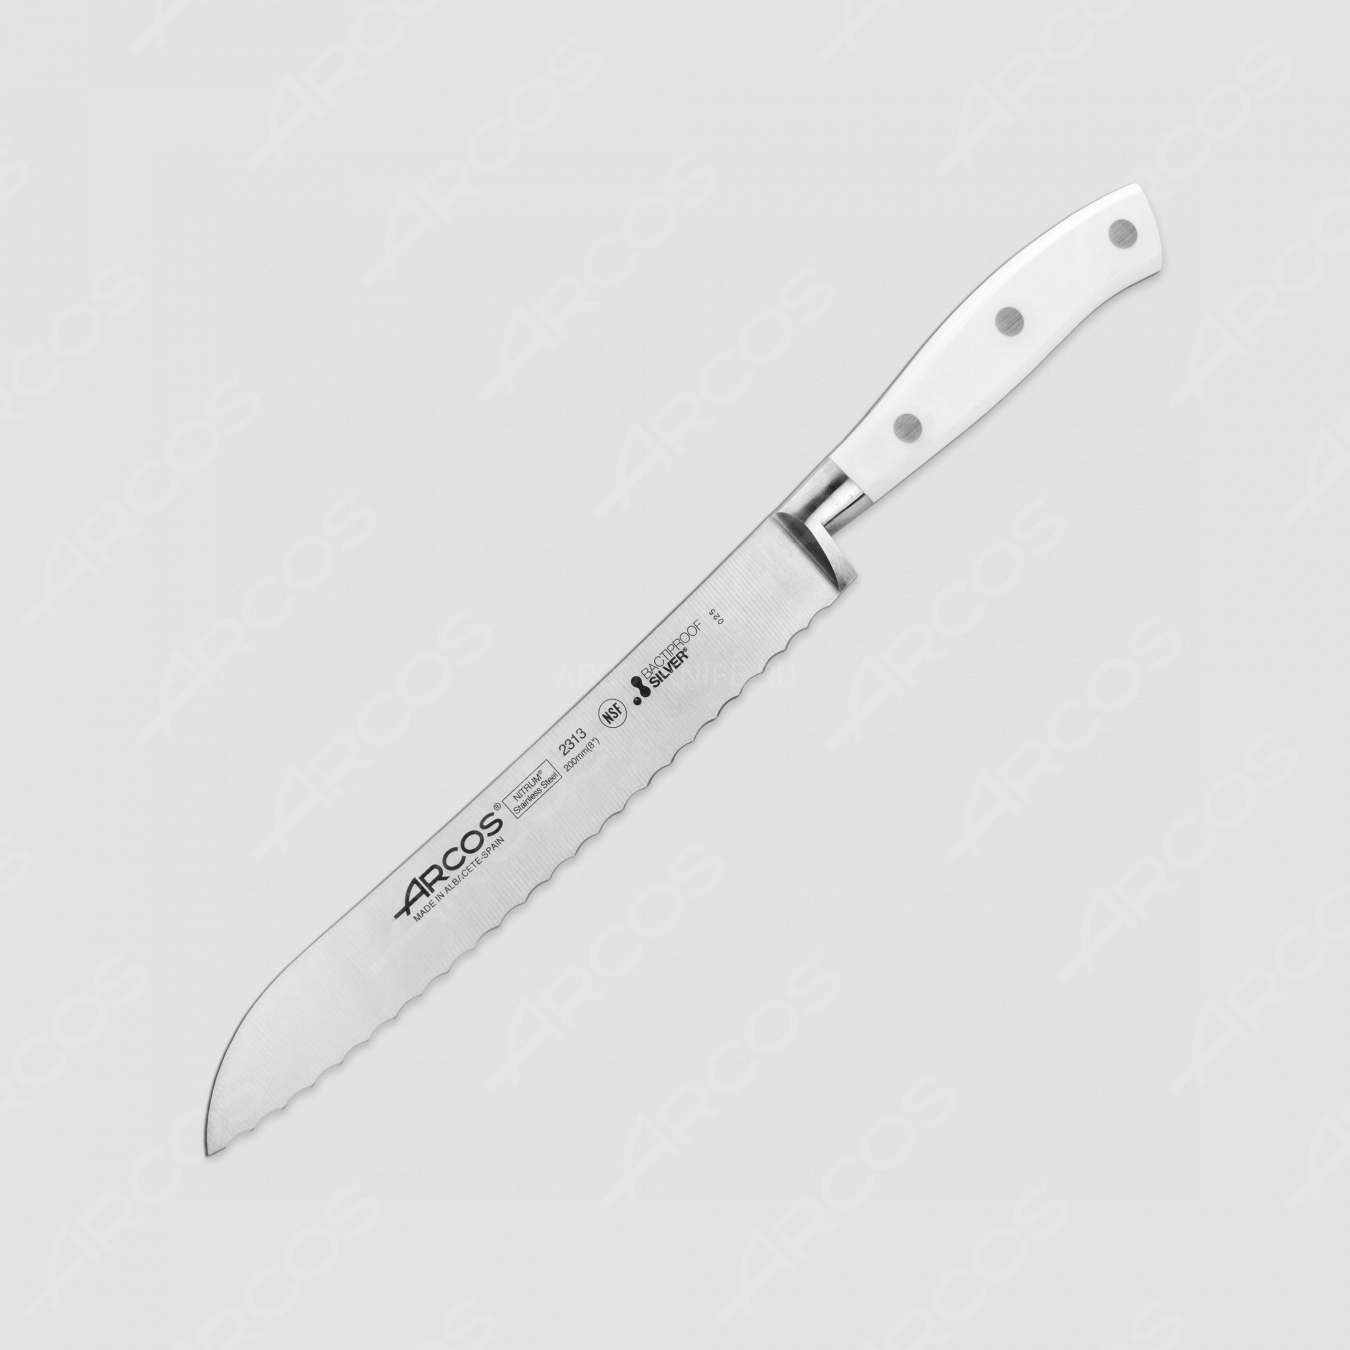 Нож кухонный для хлеба 20 см, серия Riviera Blanca, ARCOS, Испания